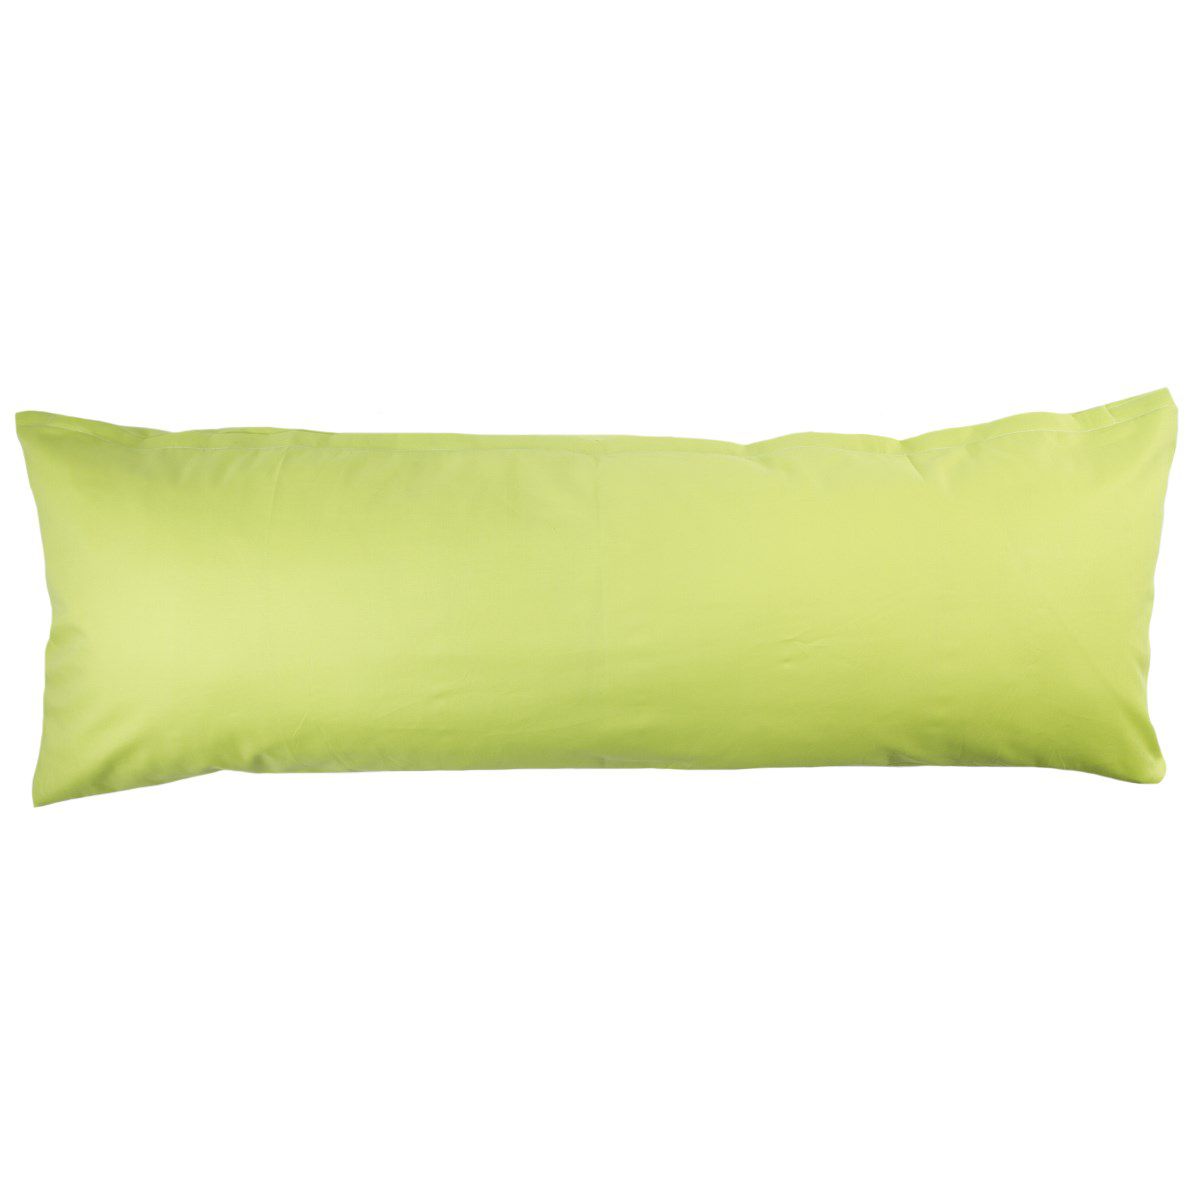 4Home povlak na Relaxační polštář Náhradní manžel světle zelená, 50 x 150 cm, 50 x 150 cm - 4home.cz